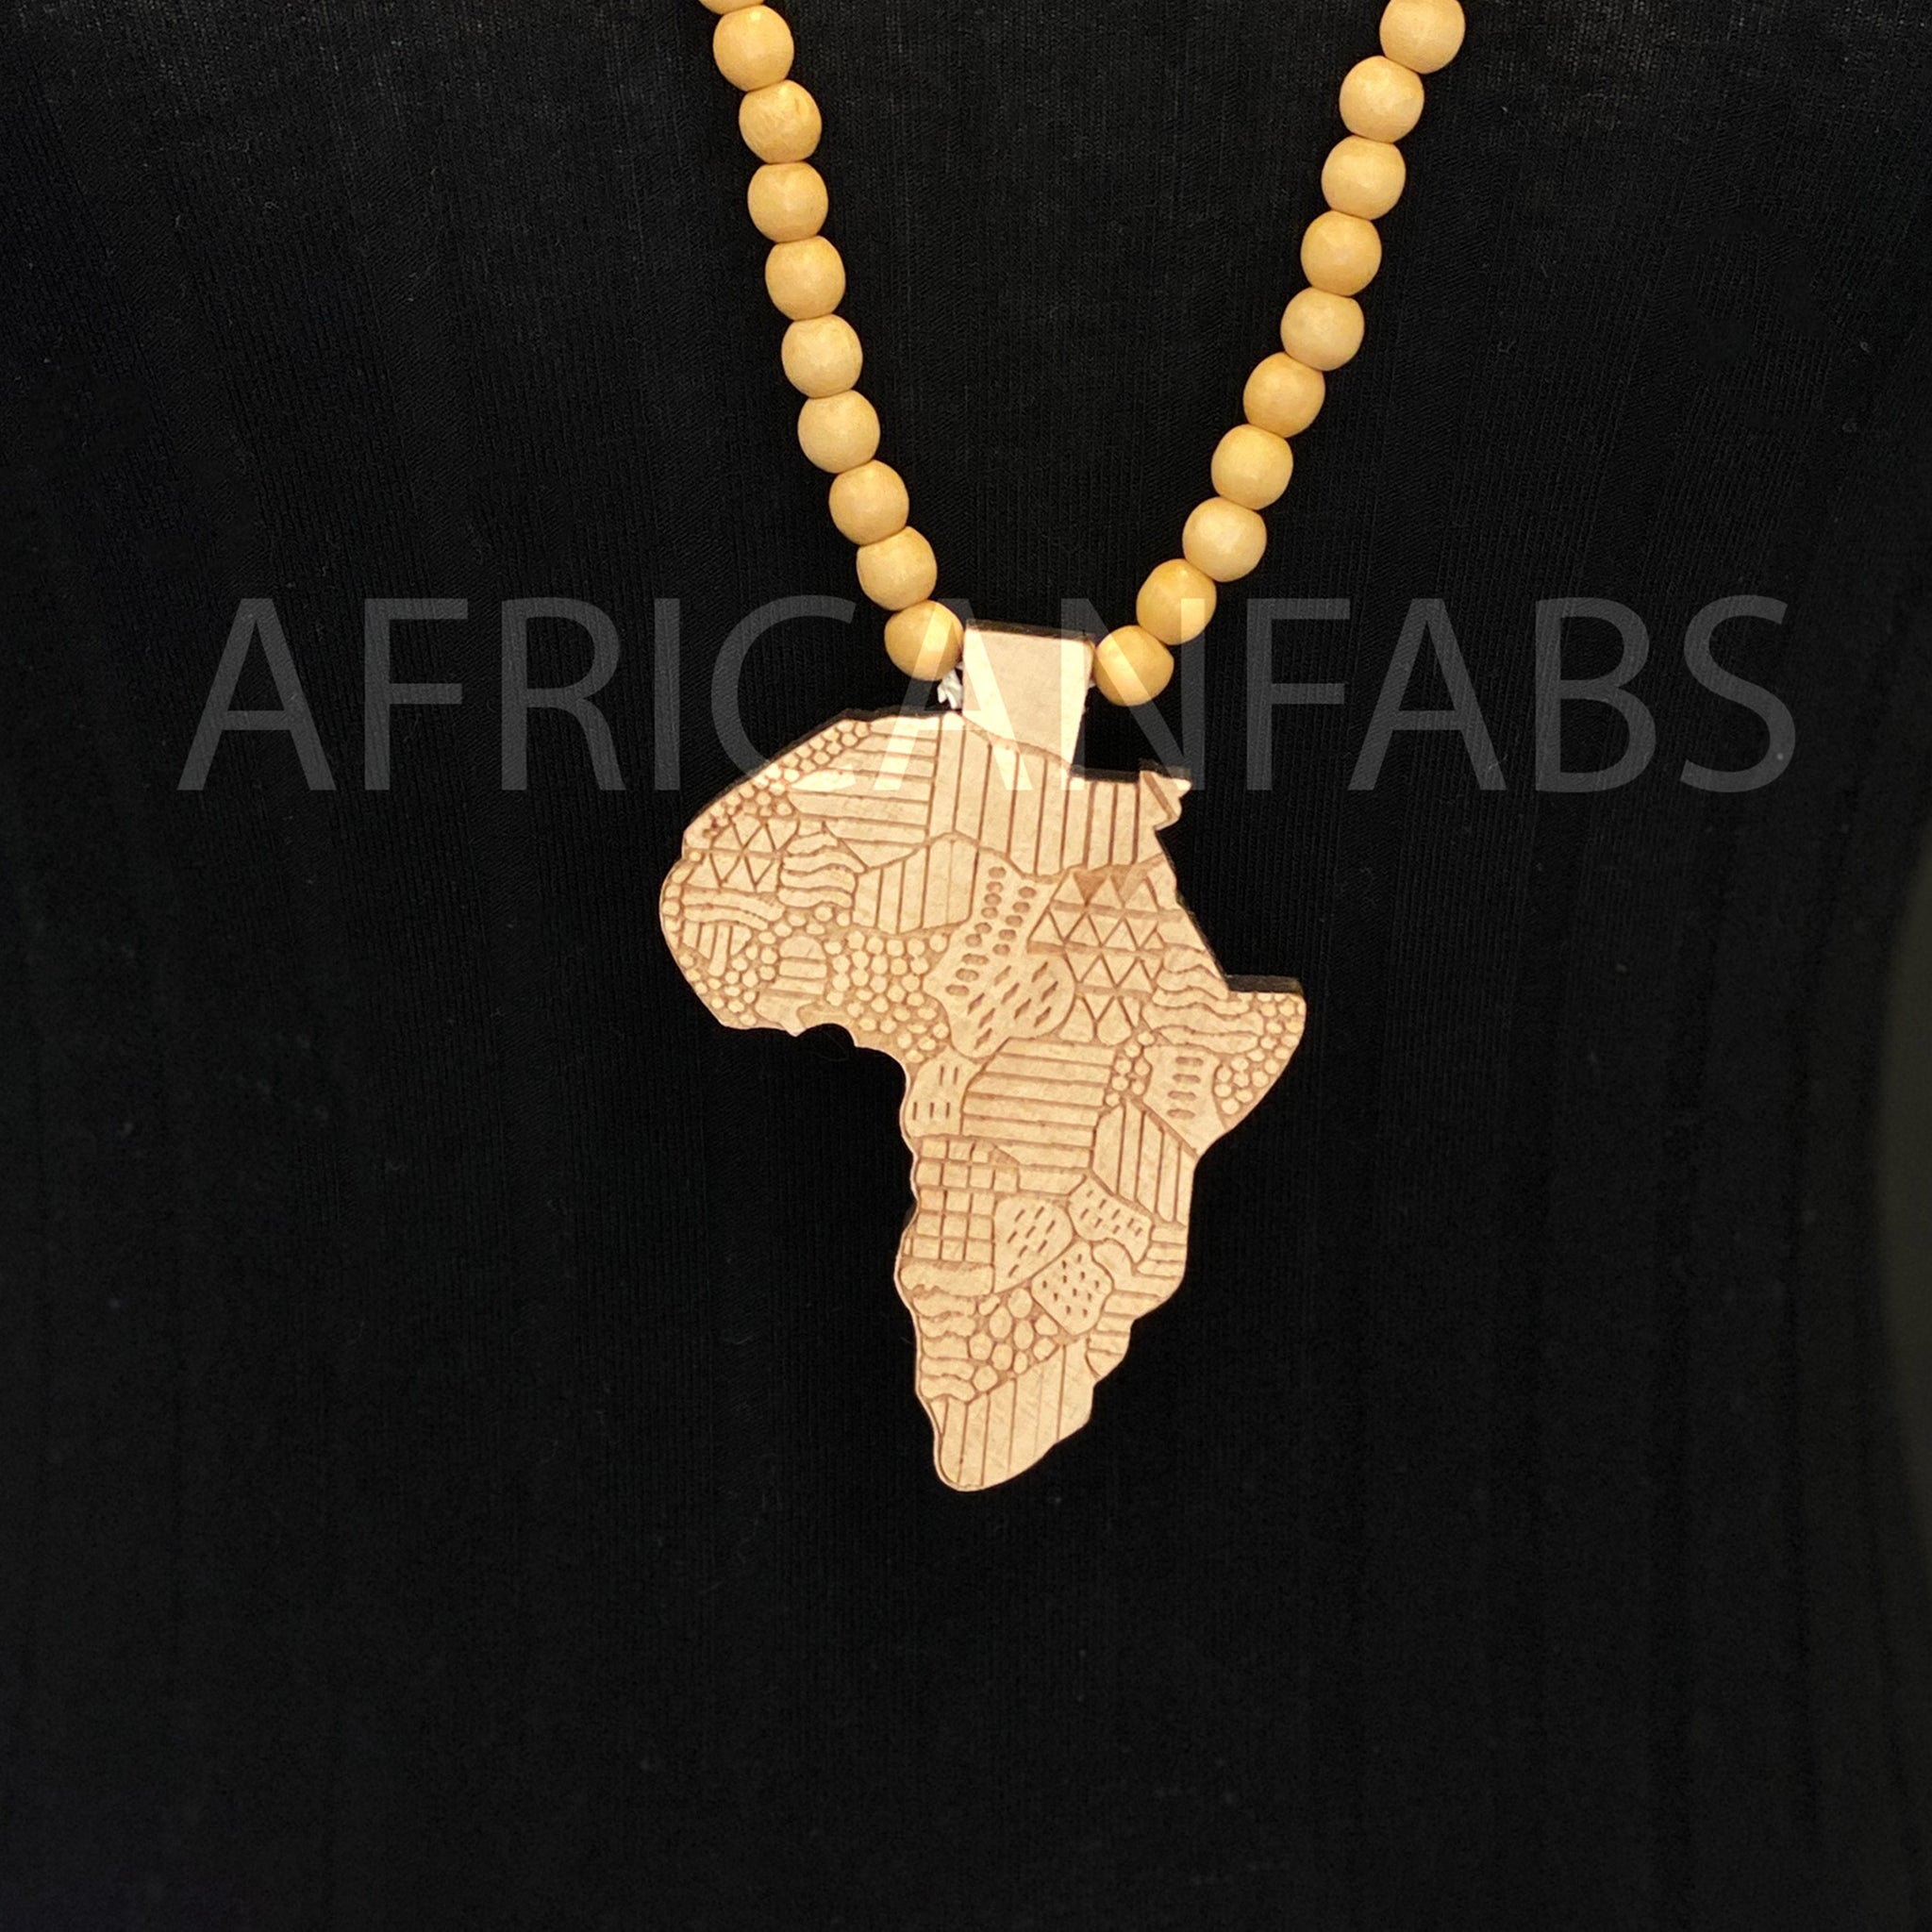 Collier de perles en bois / collier / pendentif - continent africain - Crème